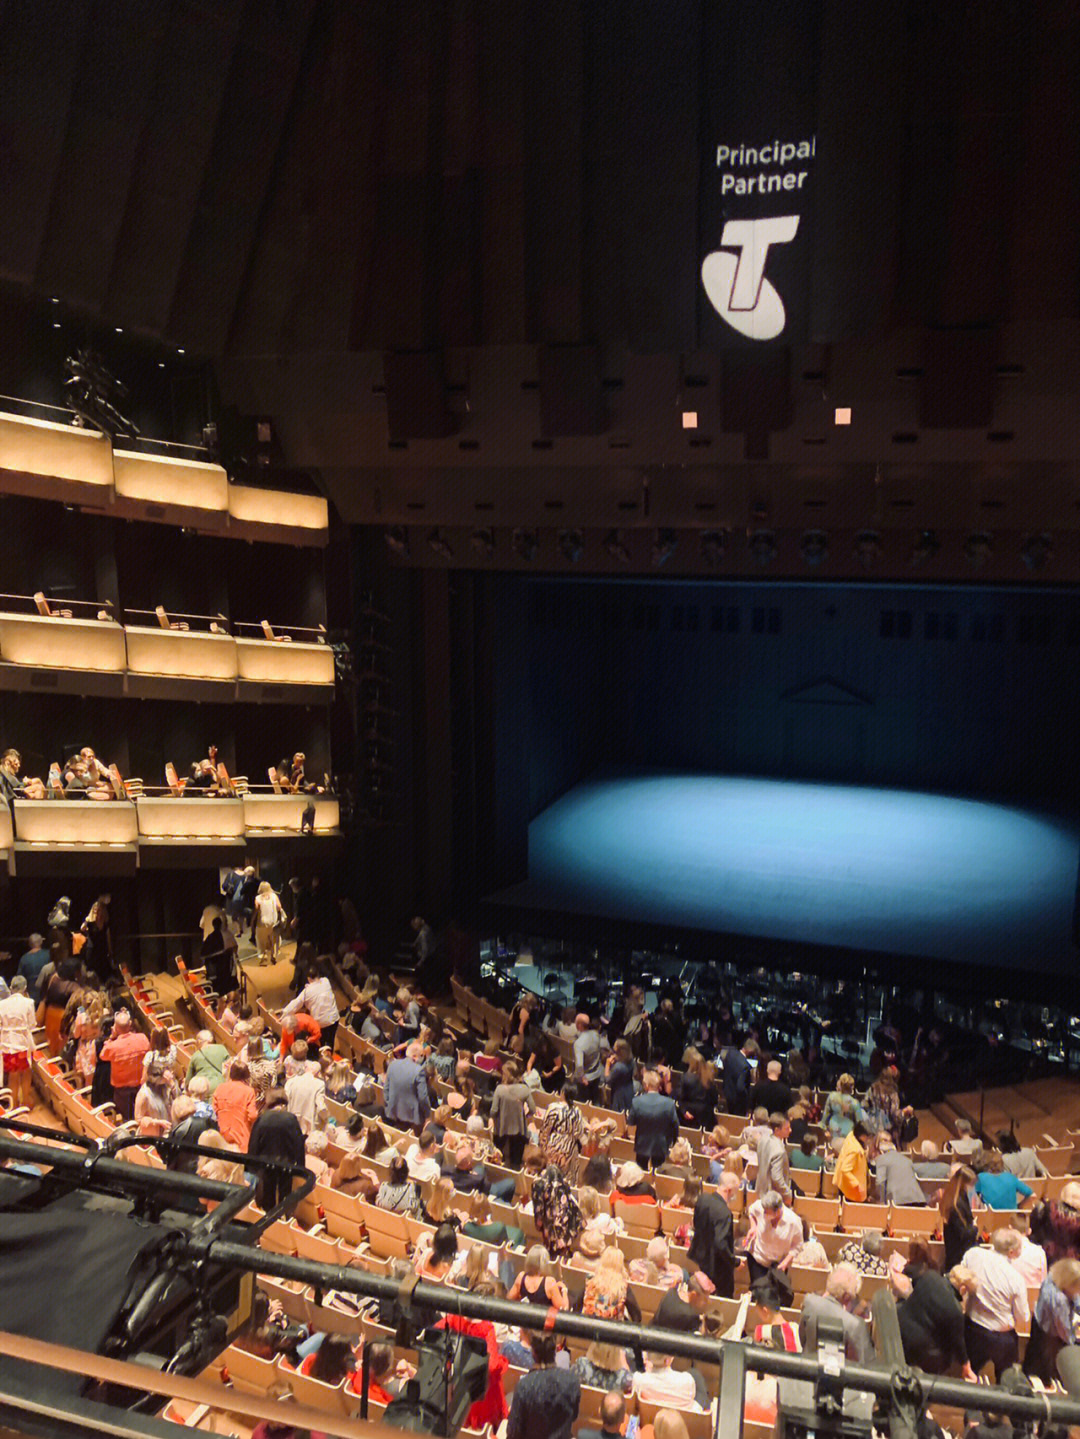 没进歌剧院听一场表演的悉尼之行怎么能算完整呢!